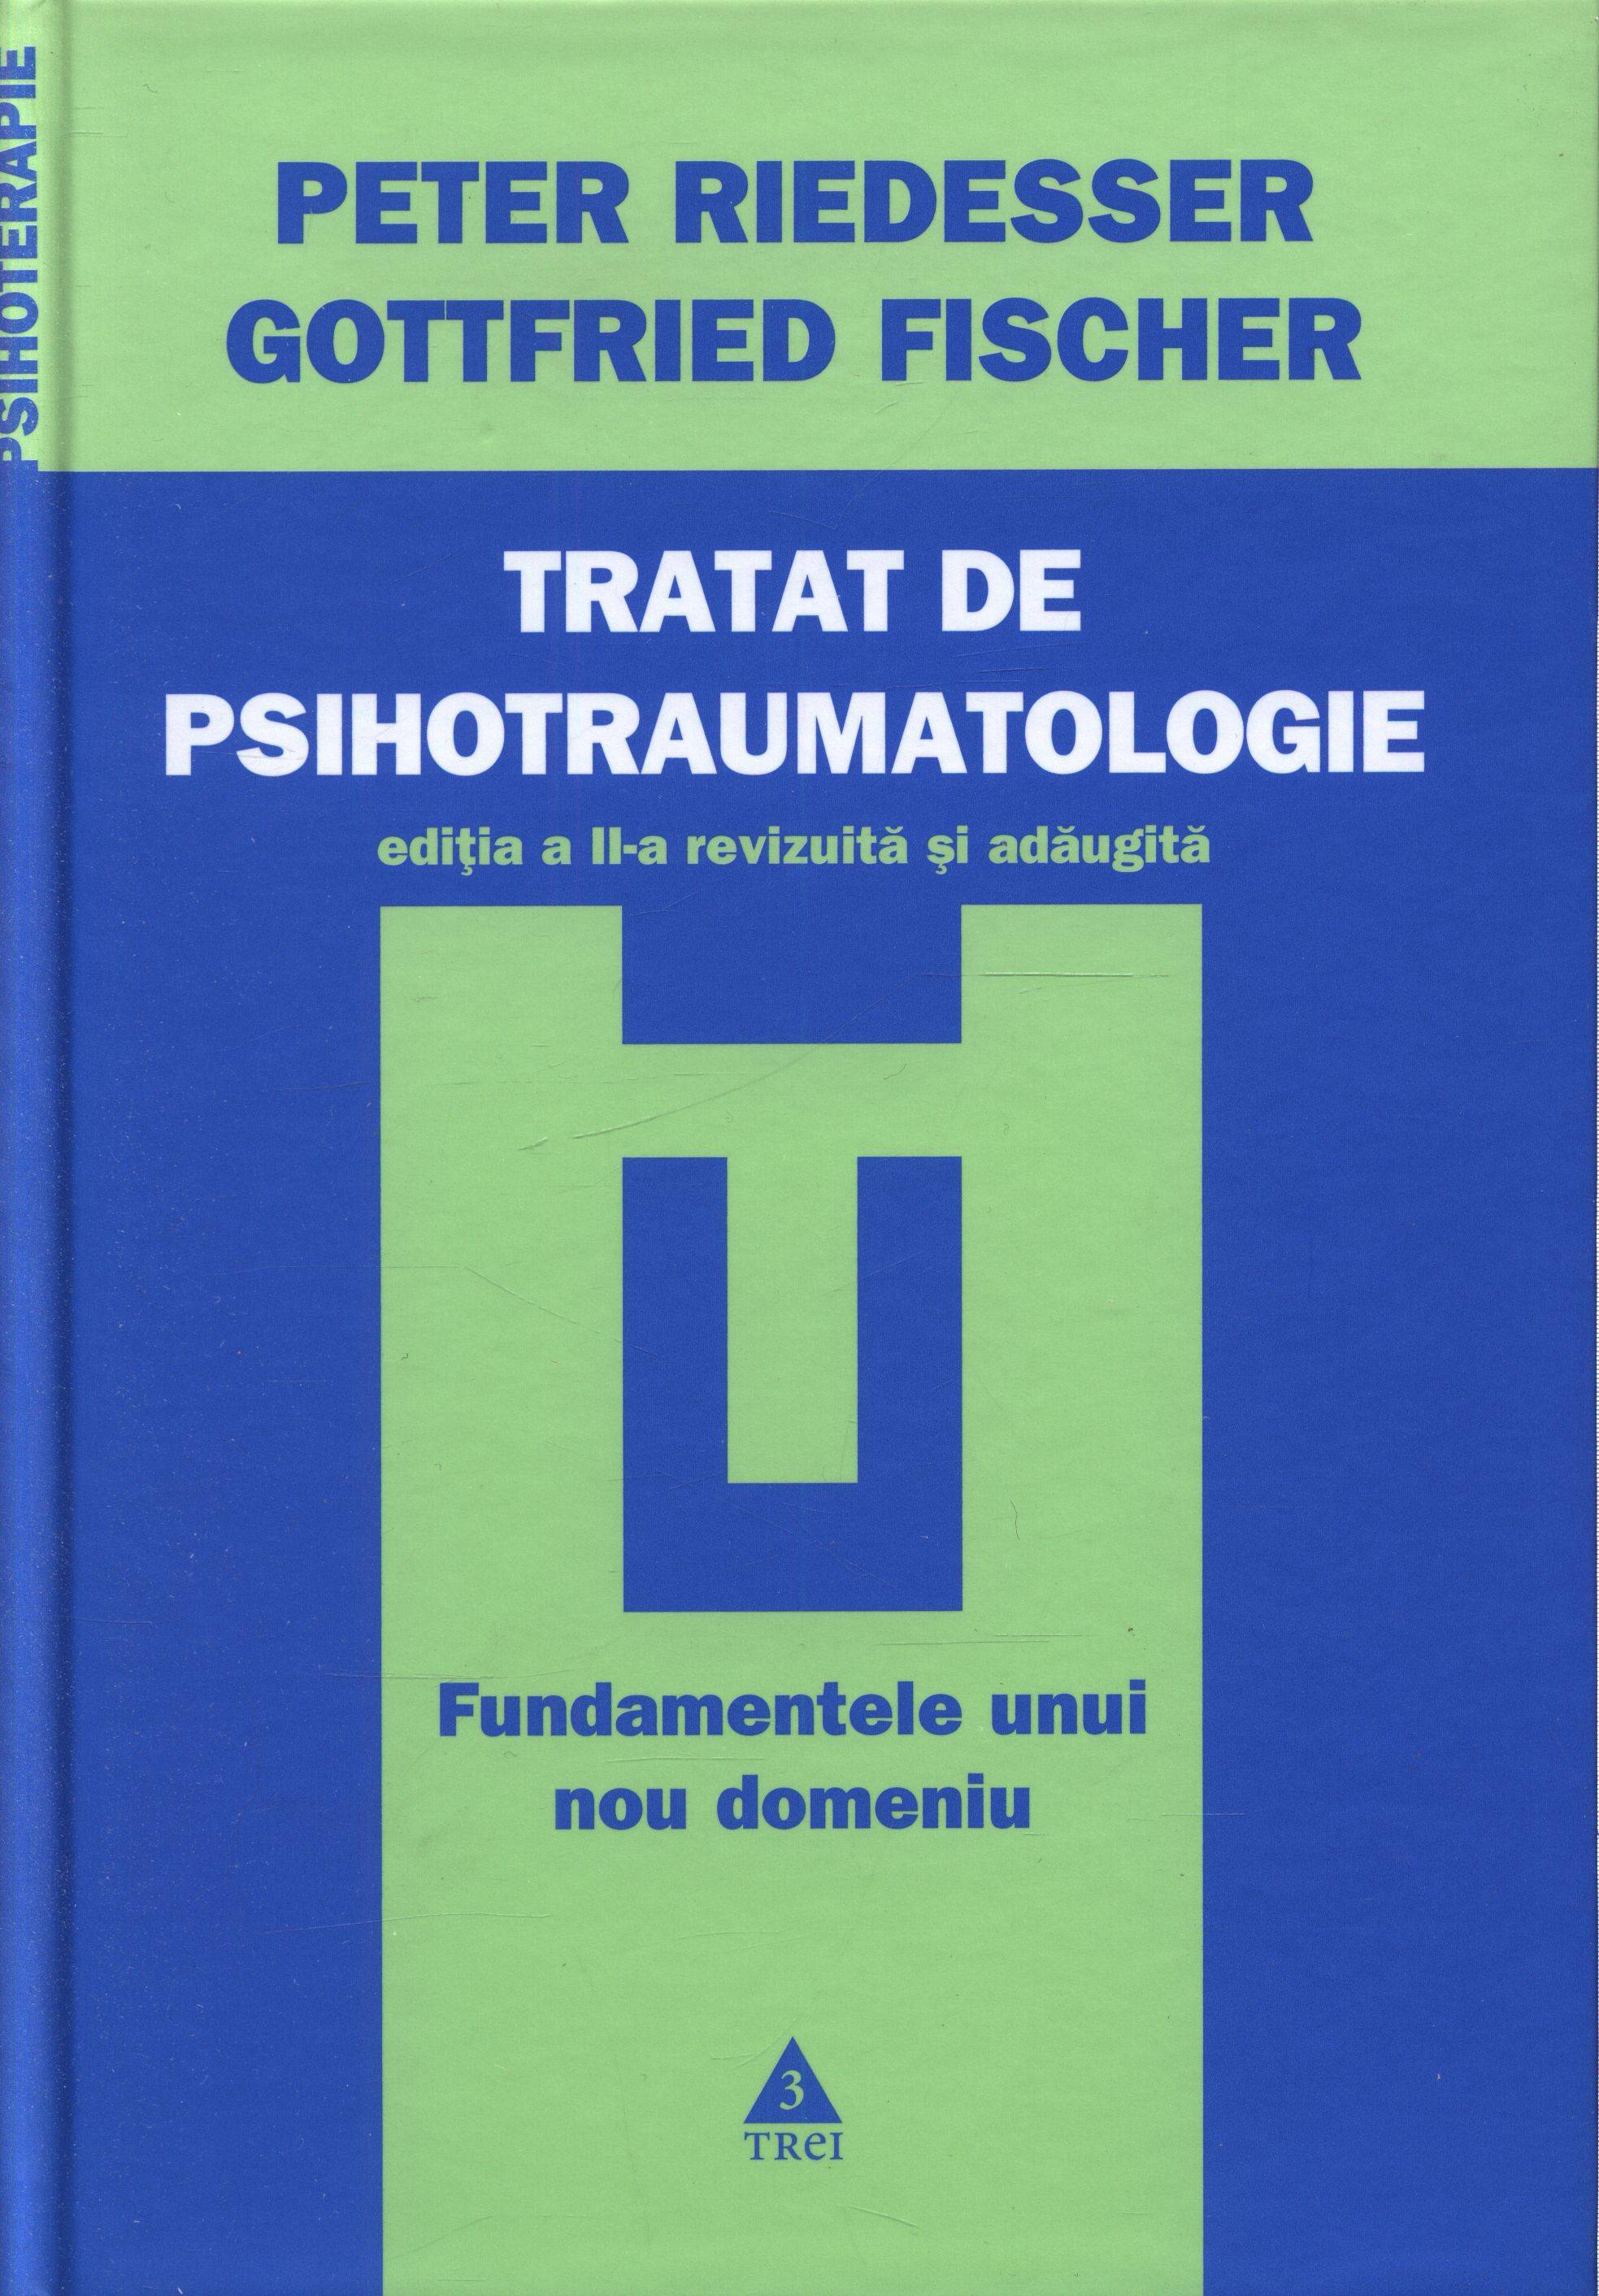 Tratat de psihotraumatologie - Peter Riedesser, Gottfried Fischer